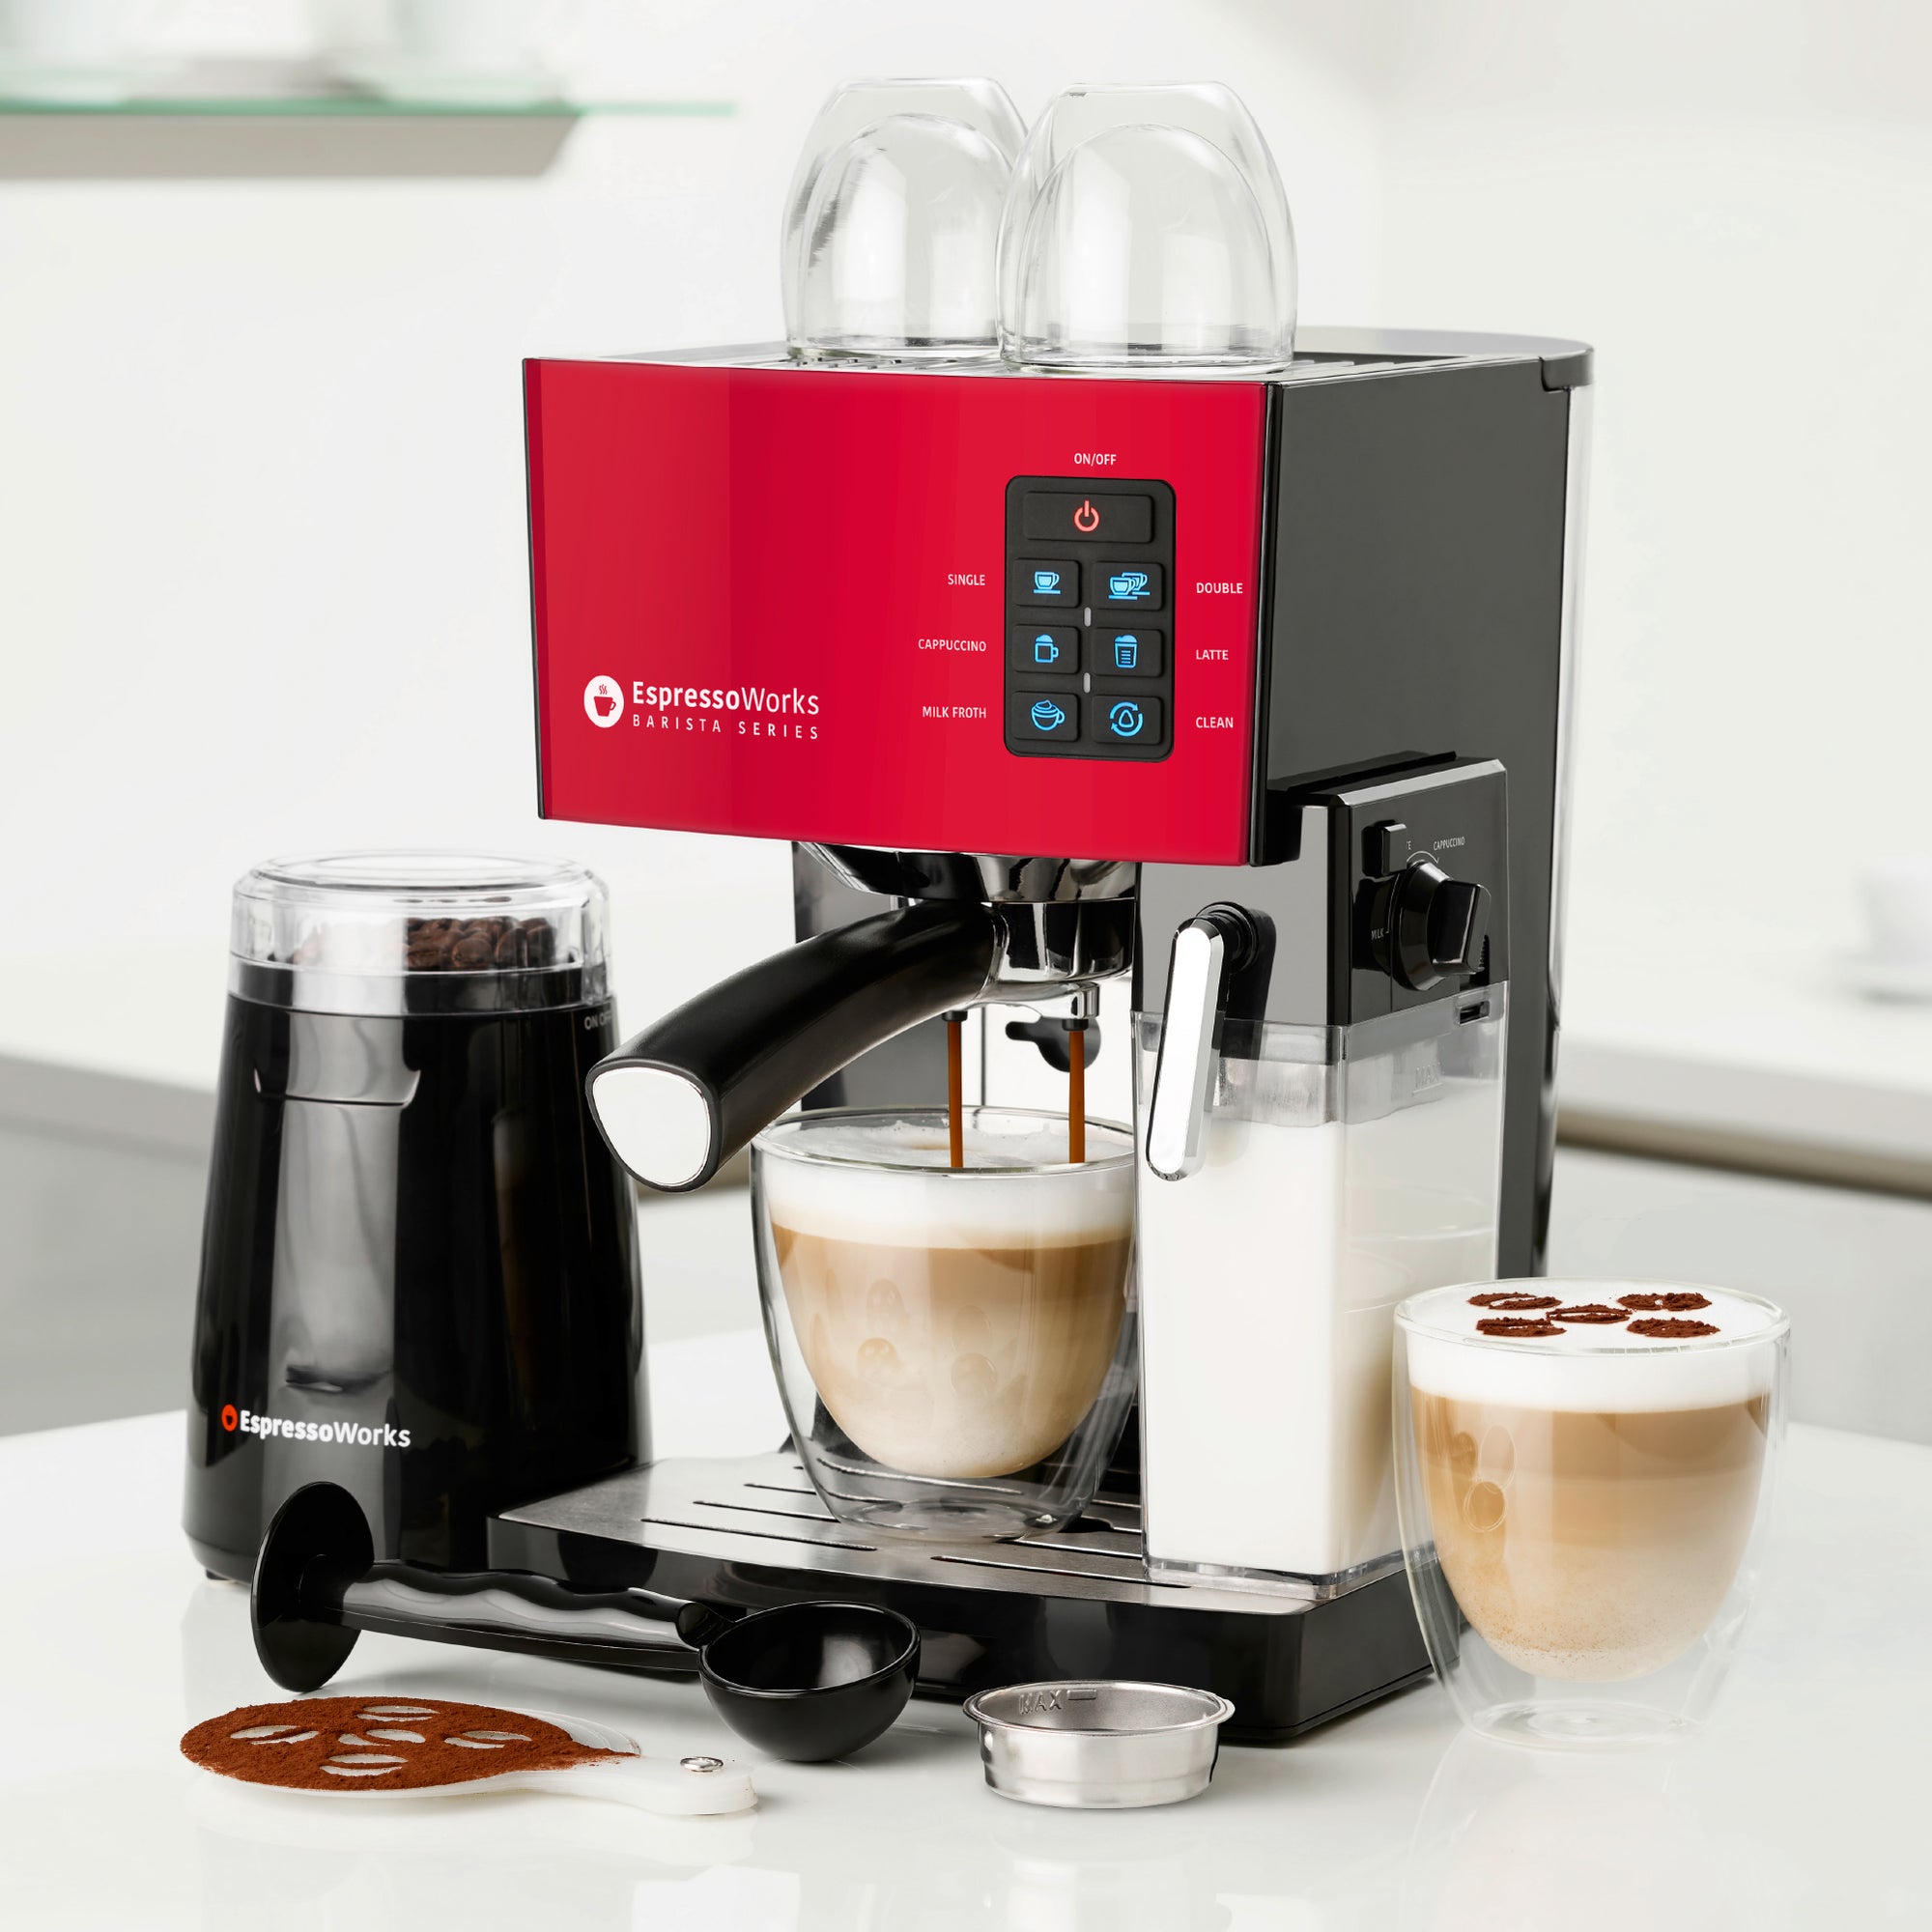 Mr. Coffee Cafe Barista Espresso and Cappuccino Maker, Red 